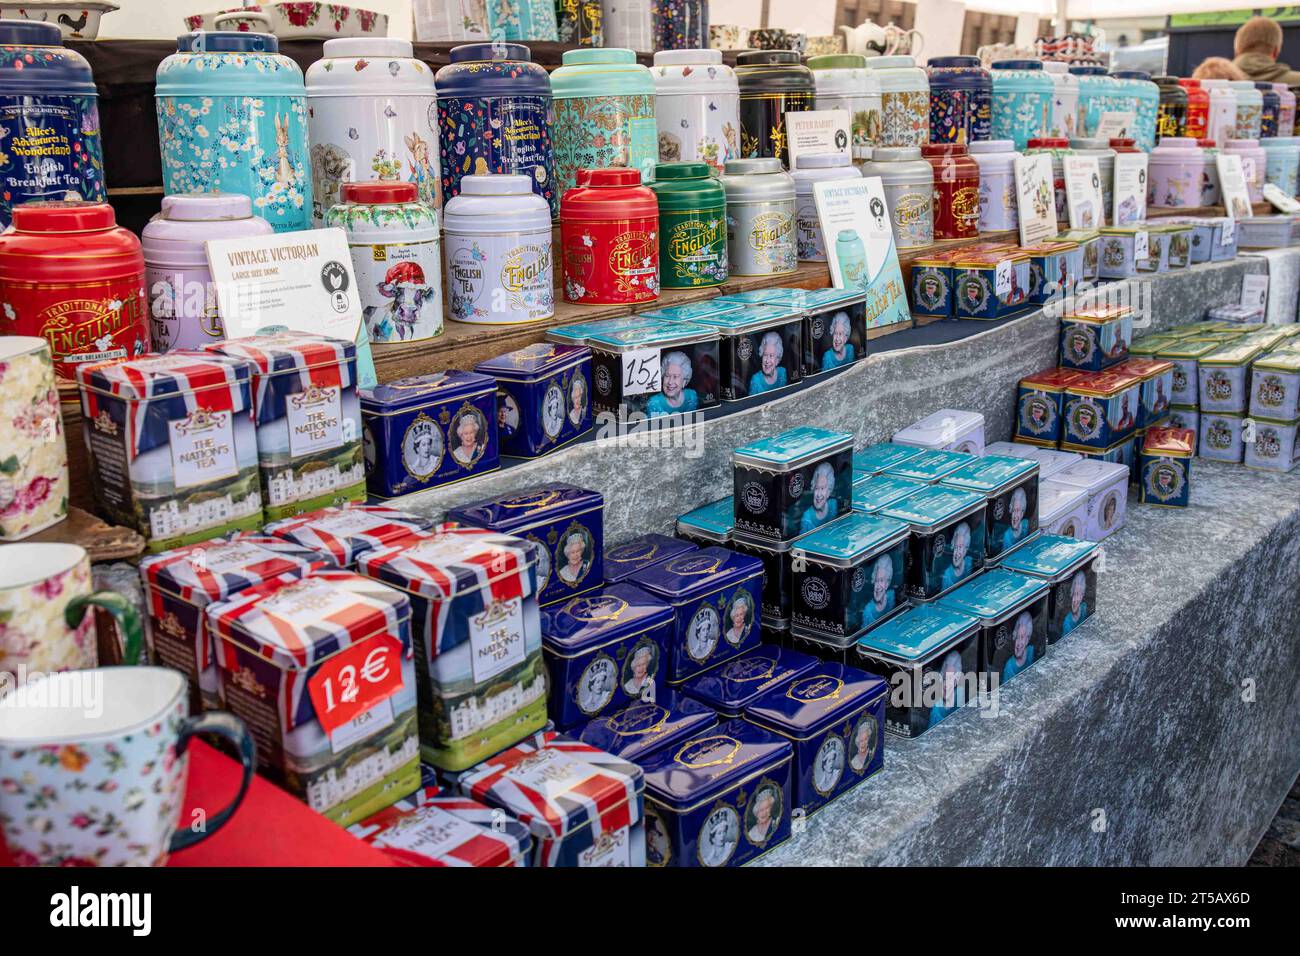 Various tea tins for sale at Kansainväliset suurmarkkinat or International Grand Market in Helsinki, Finland Stock Photo